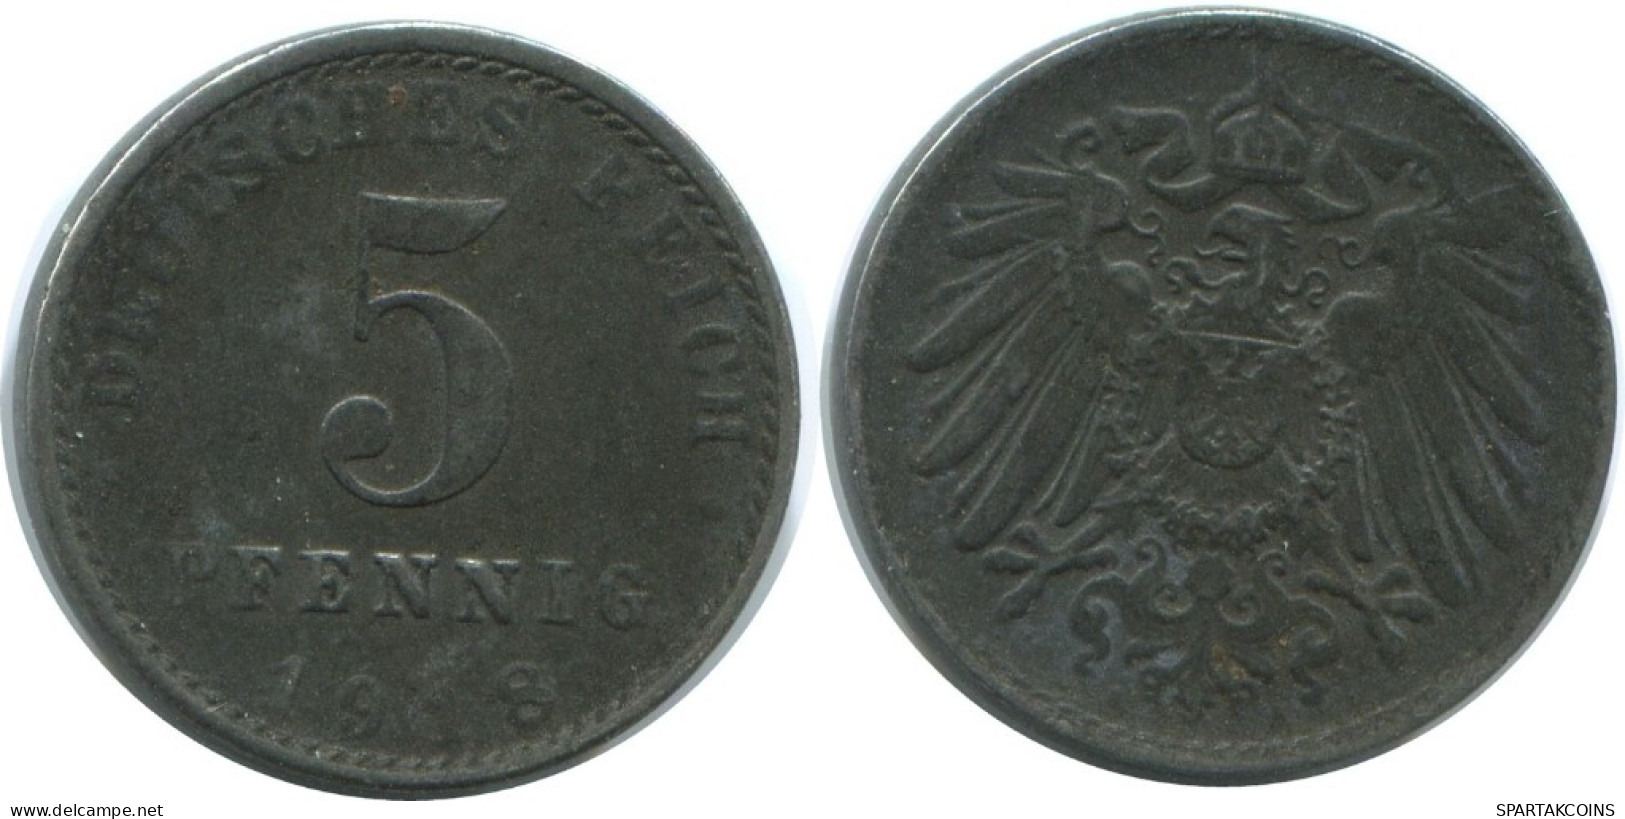 5 PFENNIG 1918 ALEMANIA Moneda GERMANY #AE315.E.A - 5 Renten- & 5 Reichspfennig